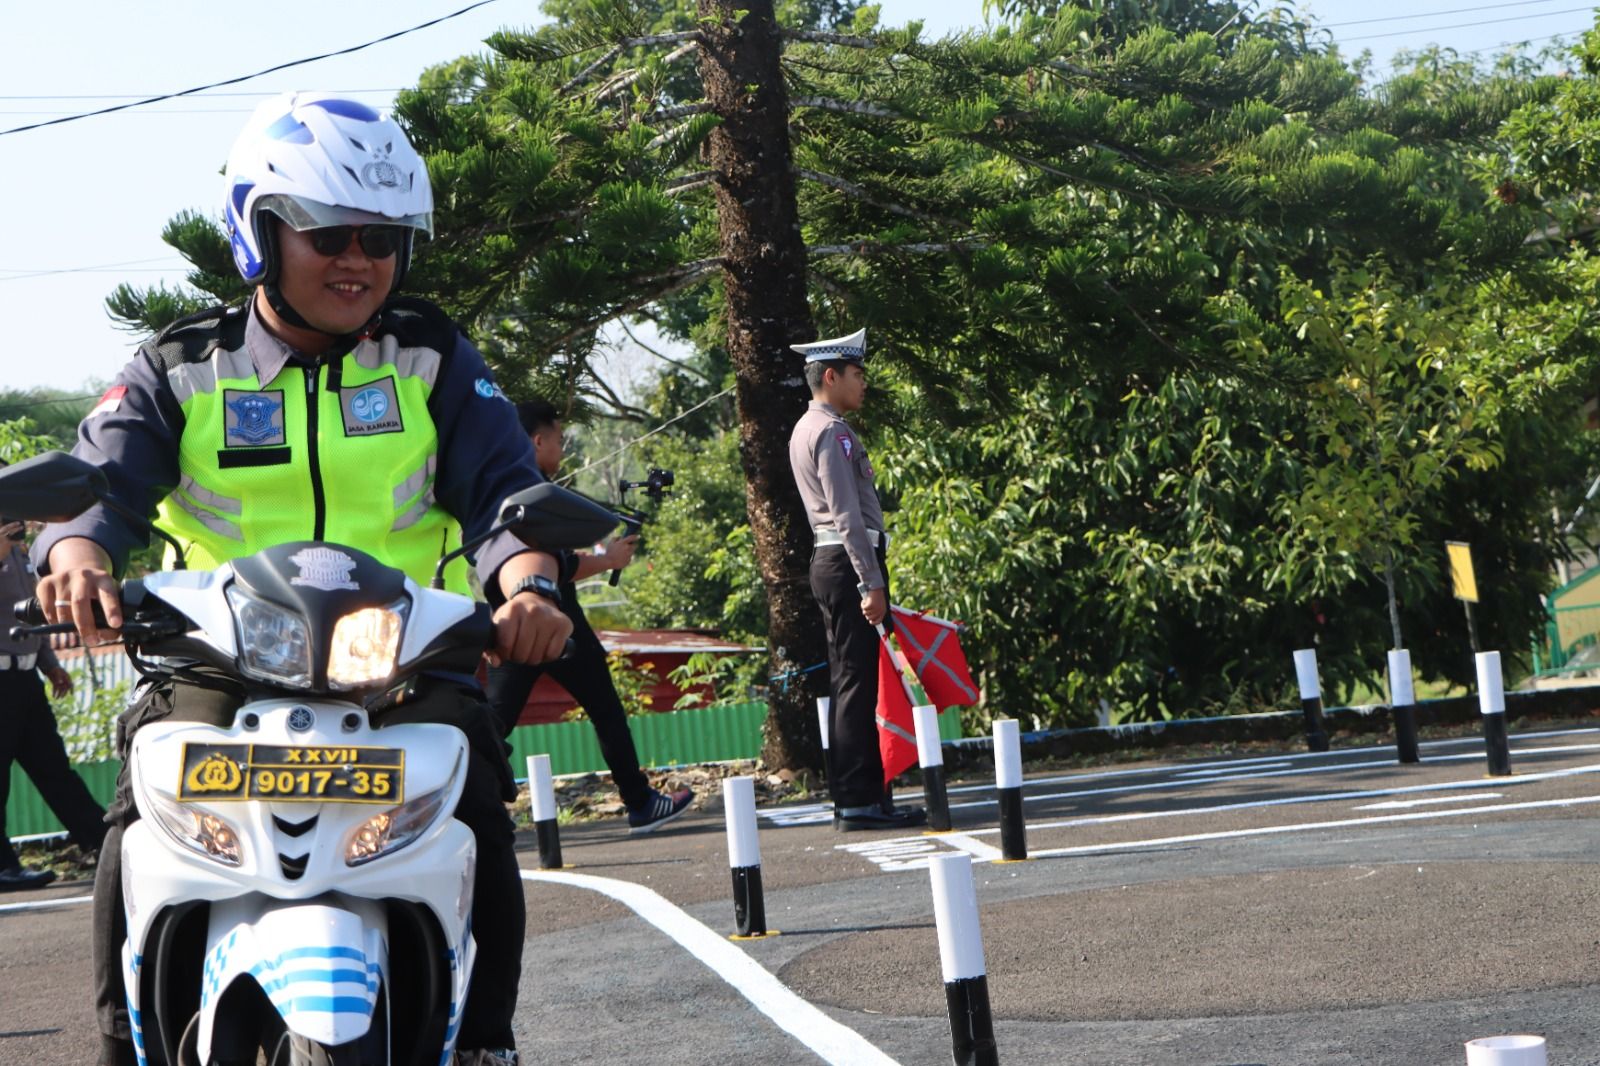  Satlantas Polres Kepahiang Polda Bengkulu telah memulai pemberlakuan ujian praktik dengan materi baru bagi pemohon surat izin mengemudi (SIM)./foto: Tribrata/